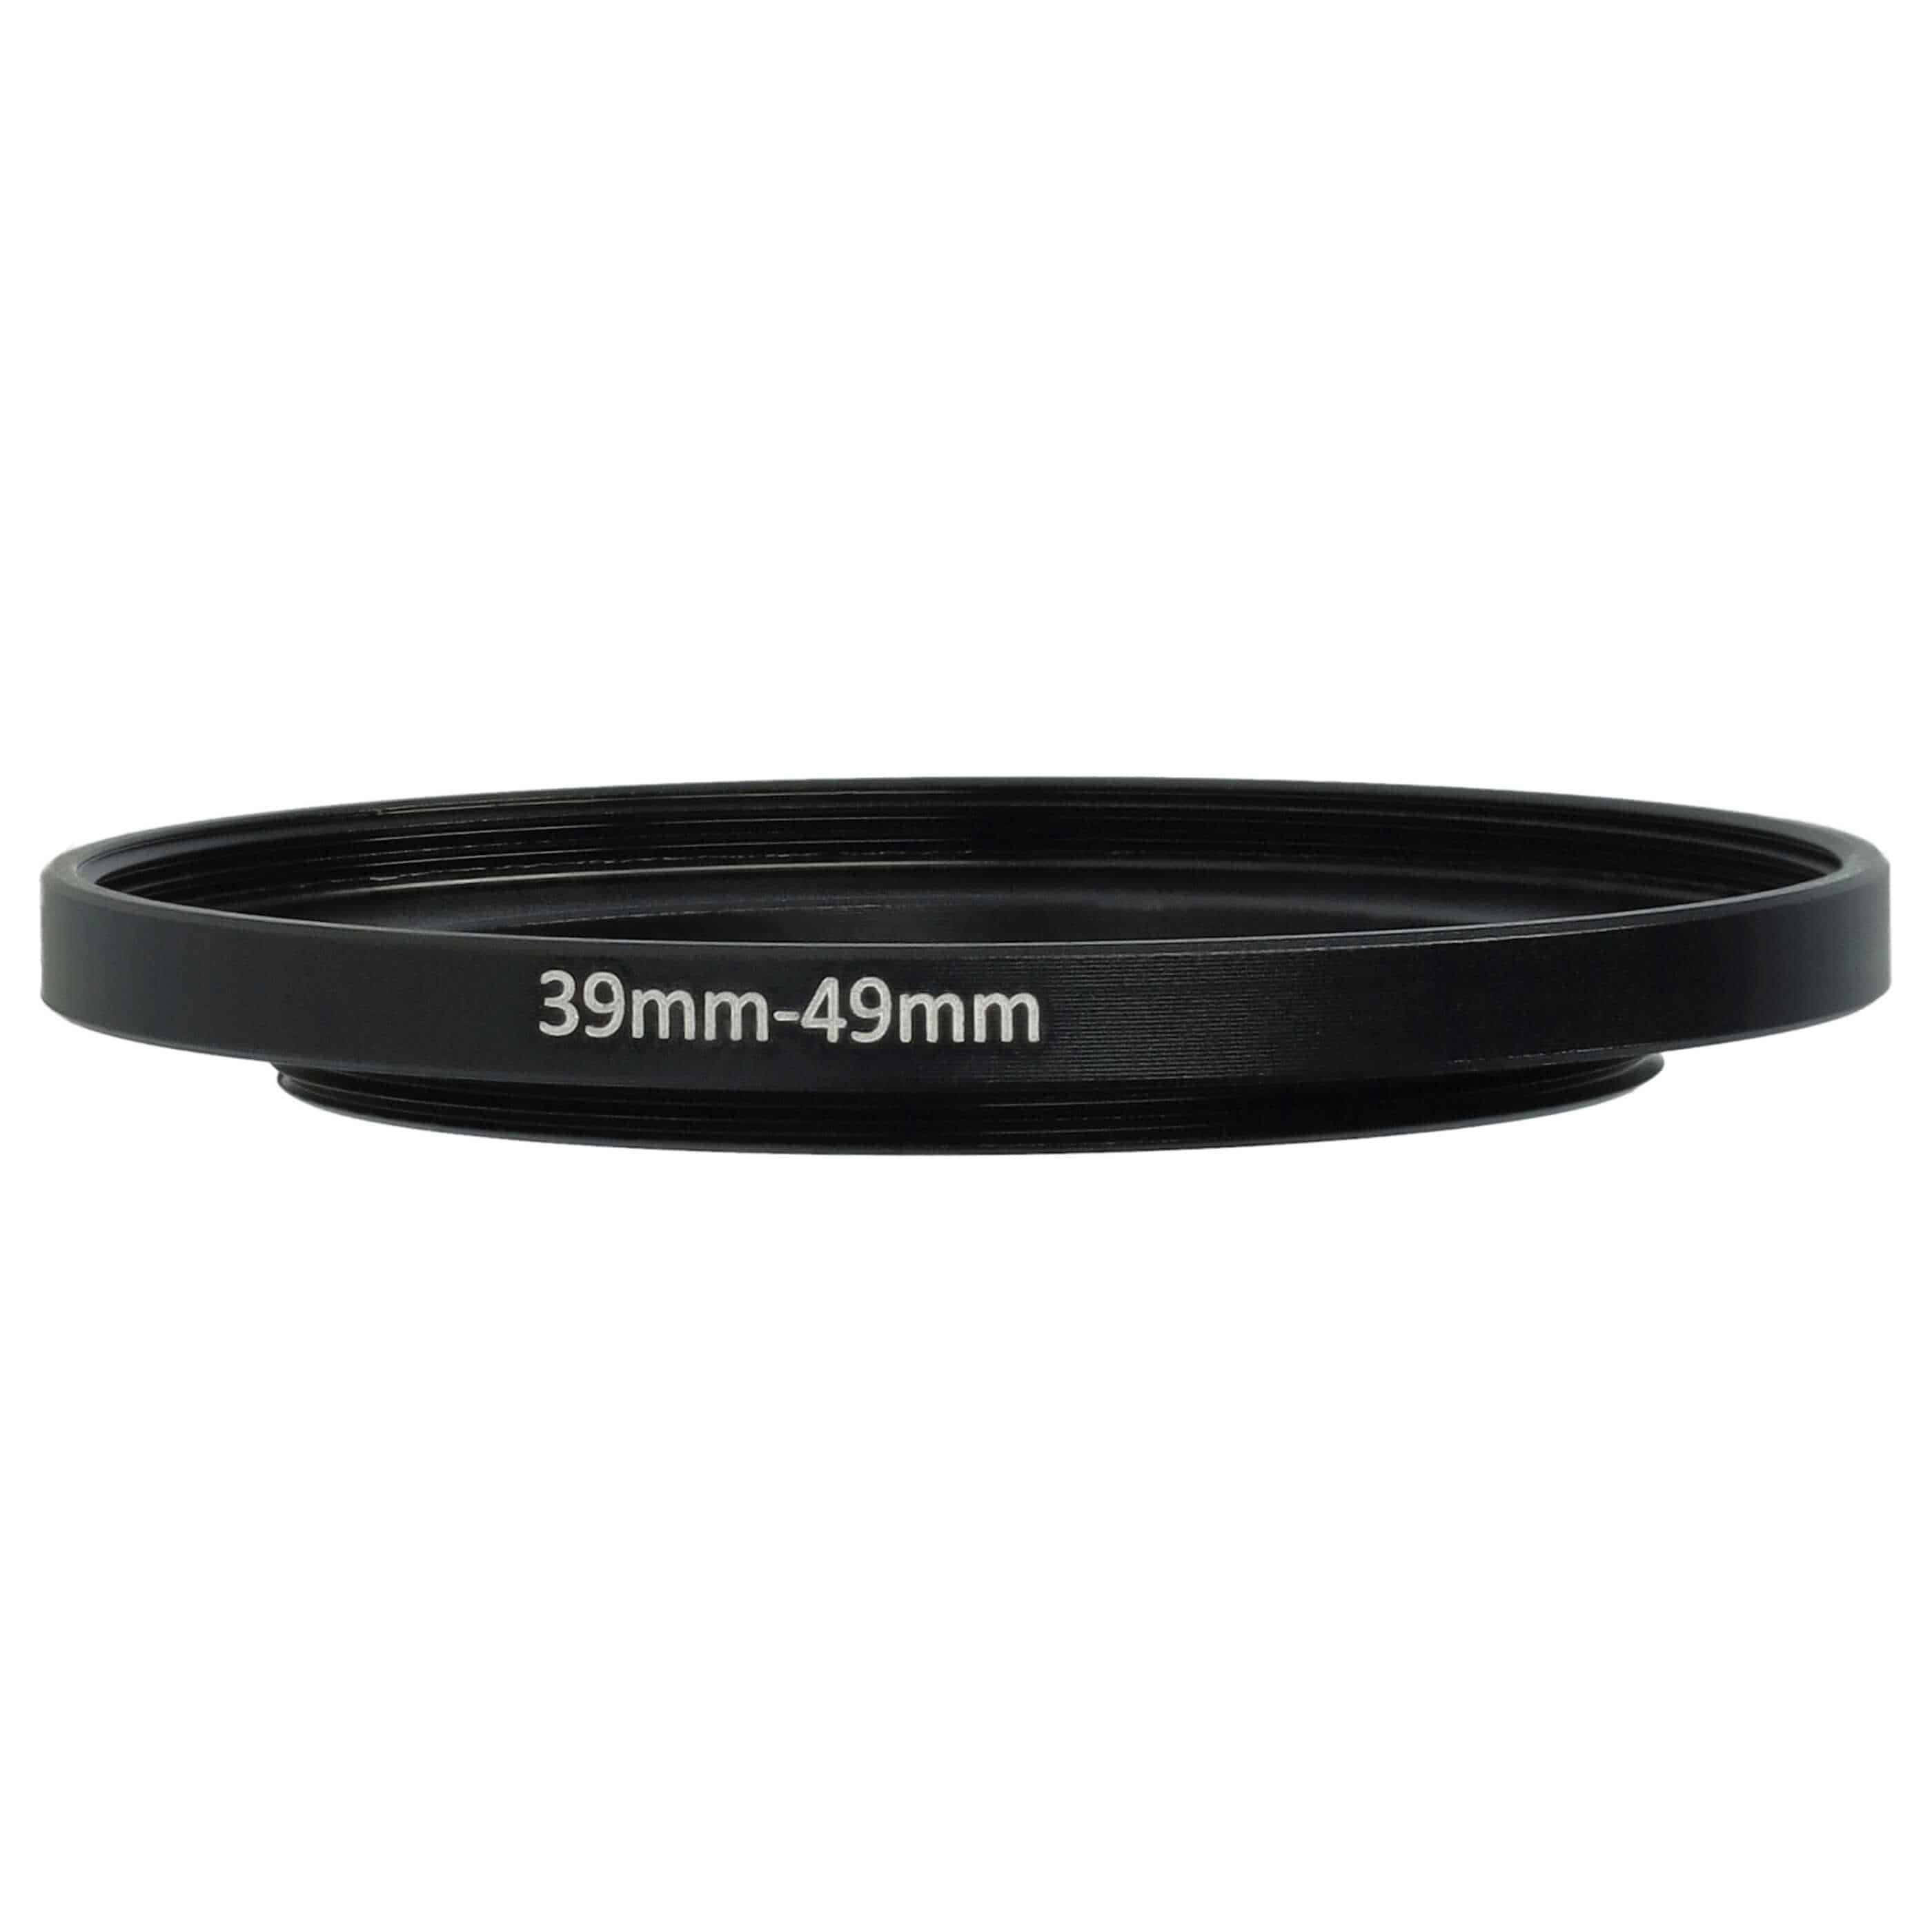 Bague Step-up 39 mm vers 49 mm pour divers objectifs d'appareil photo - Adaptateur filtre